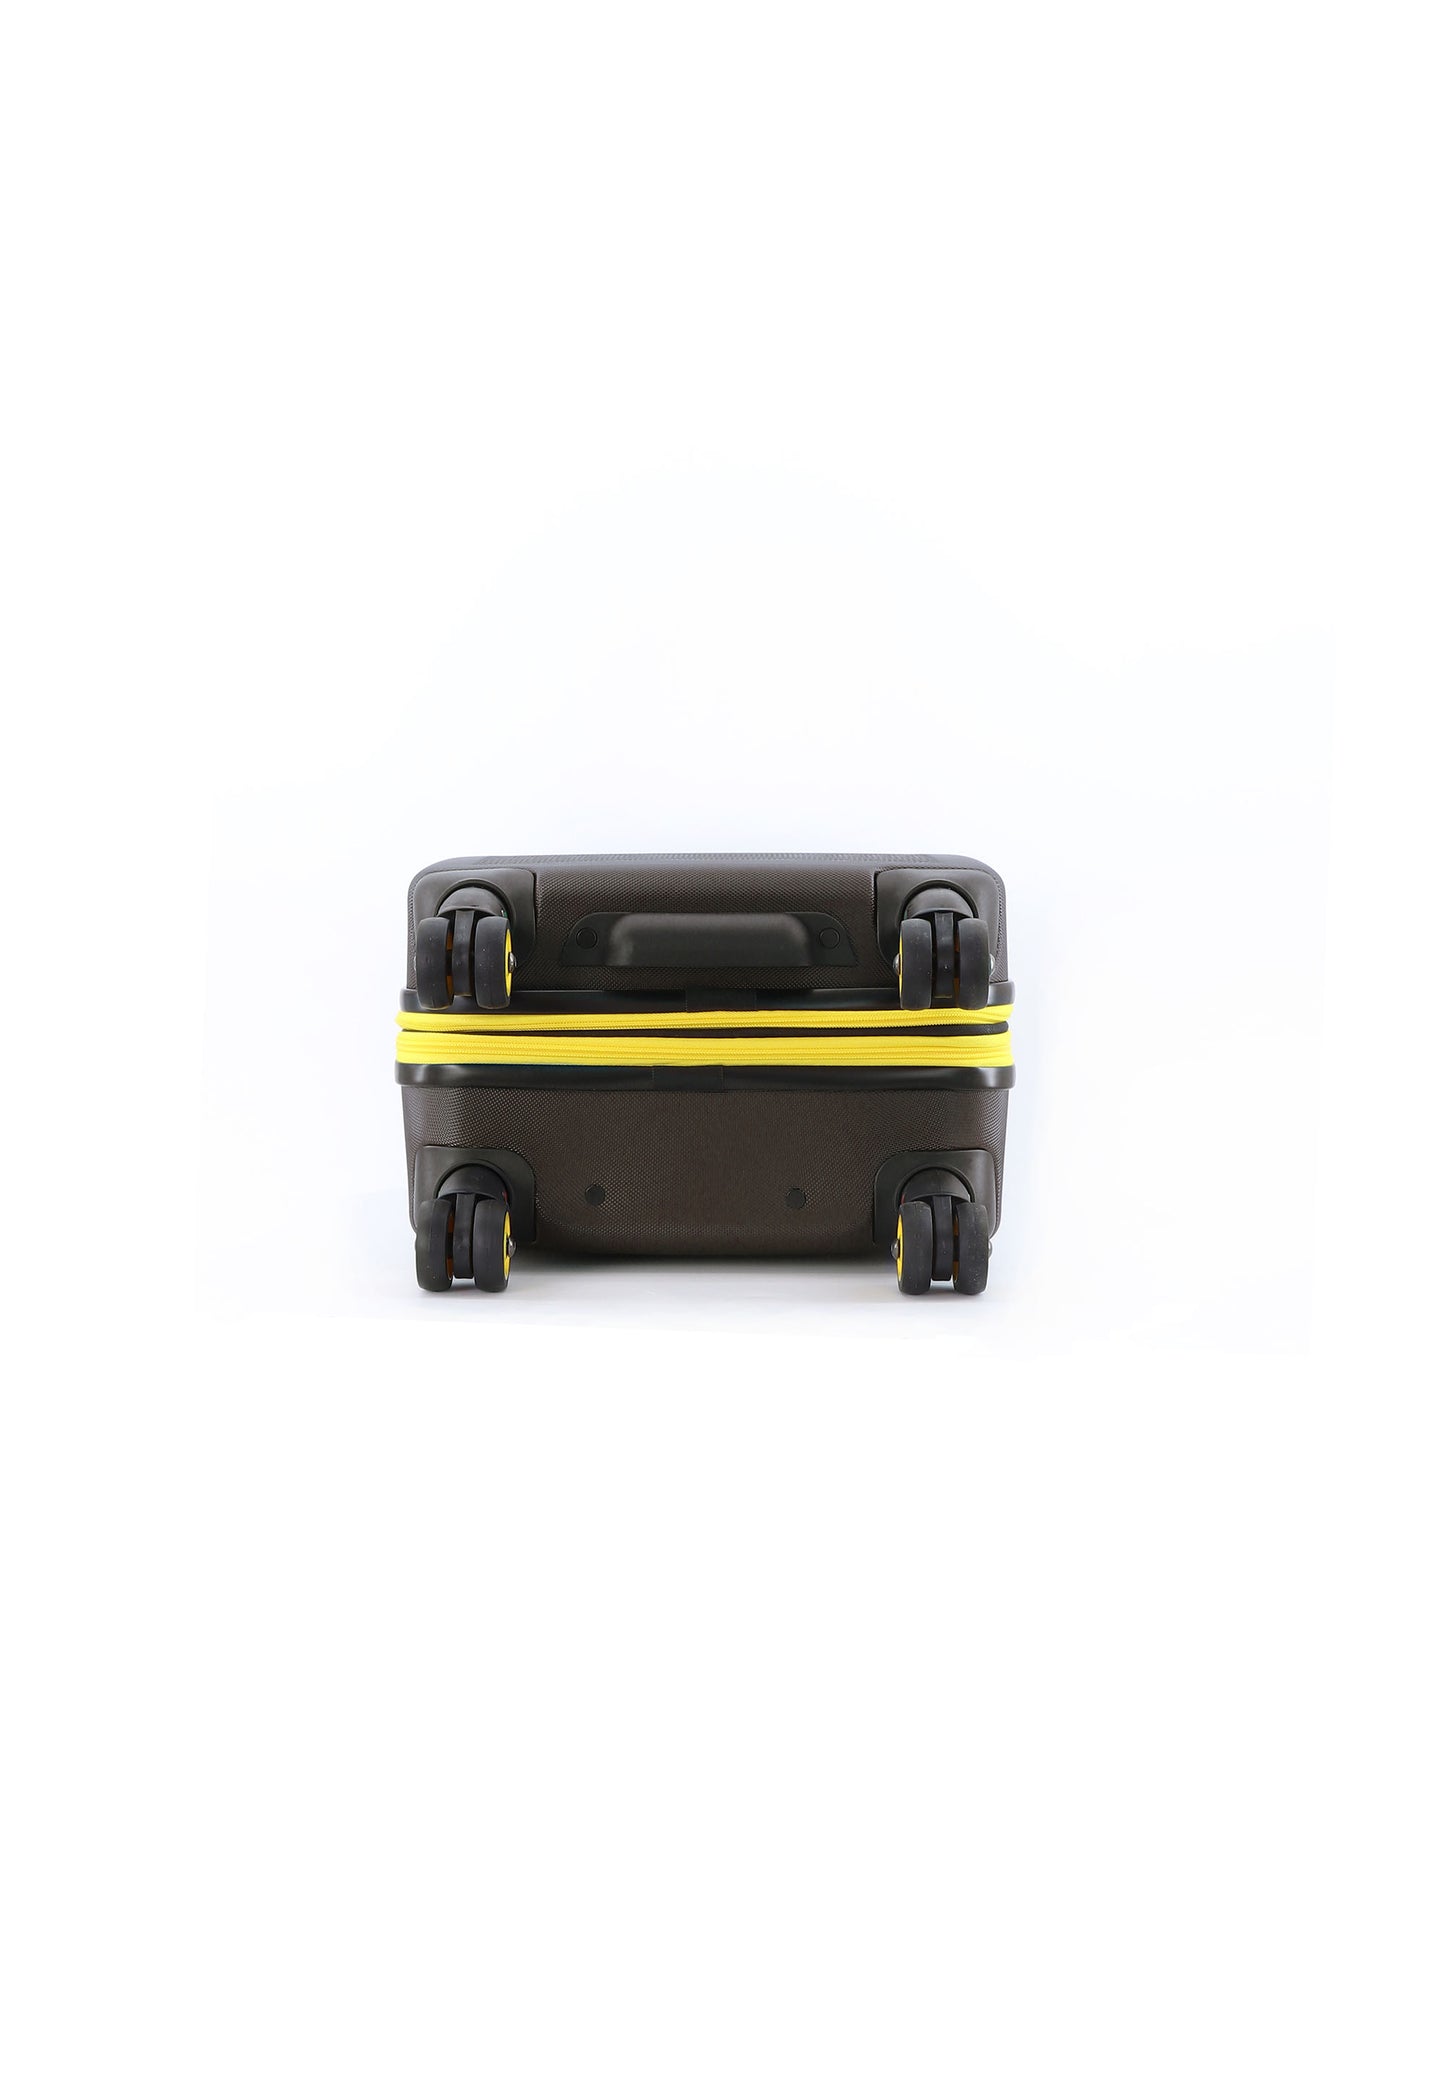 Valise rigide pour bagage à main National Geographic / Trolley / Valise de voyage - 54 cm (Petite) - Aérodrome - Kaki